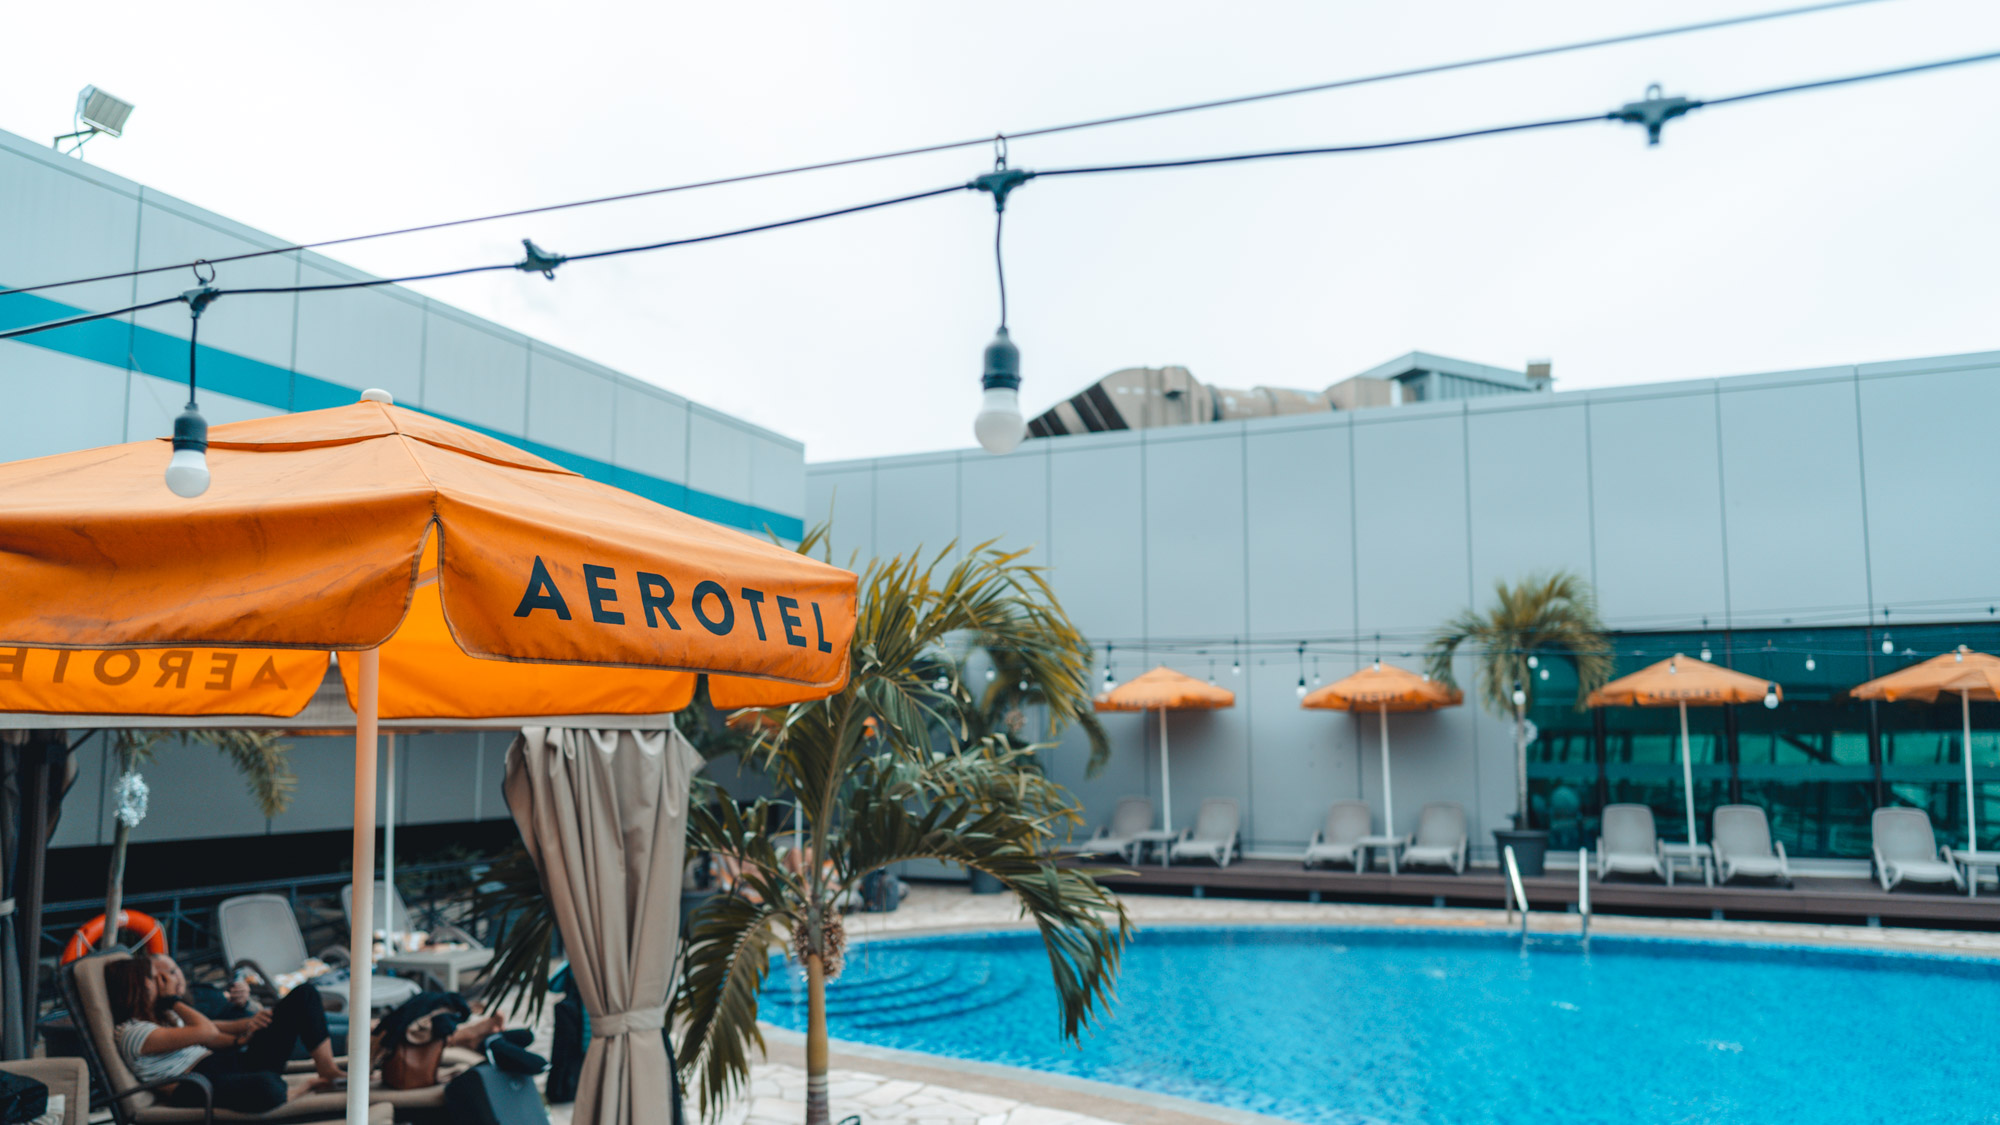 Aerotel Singapore pool umbrella